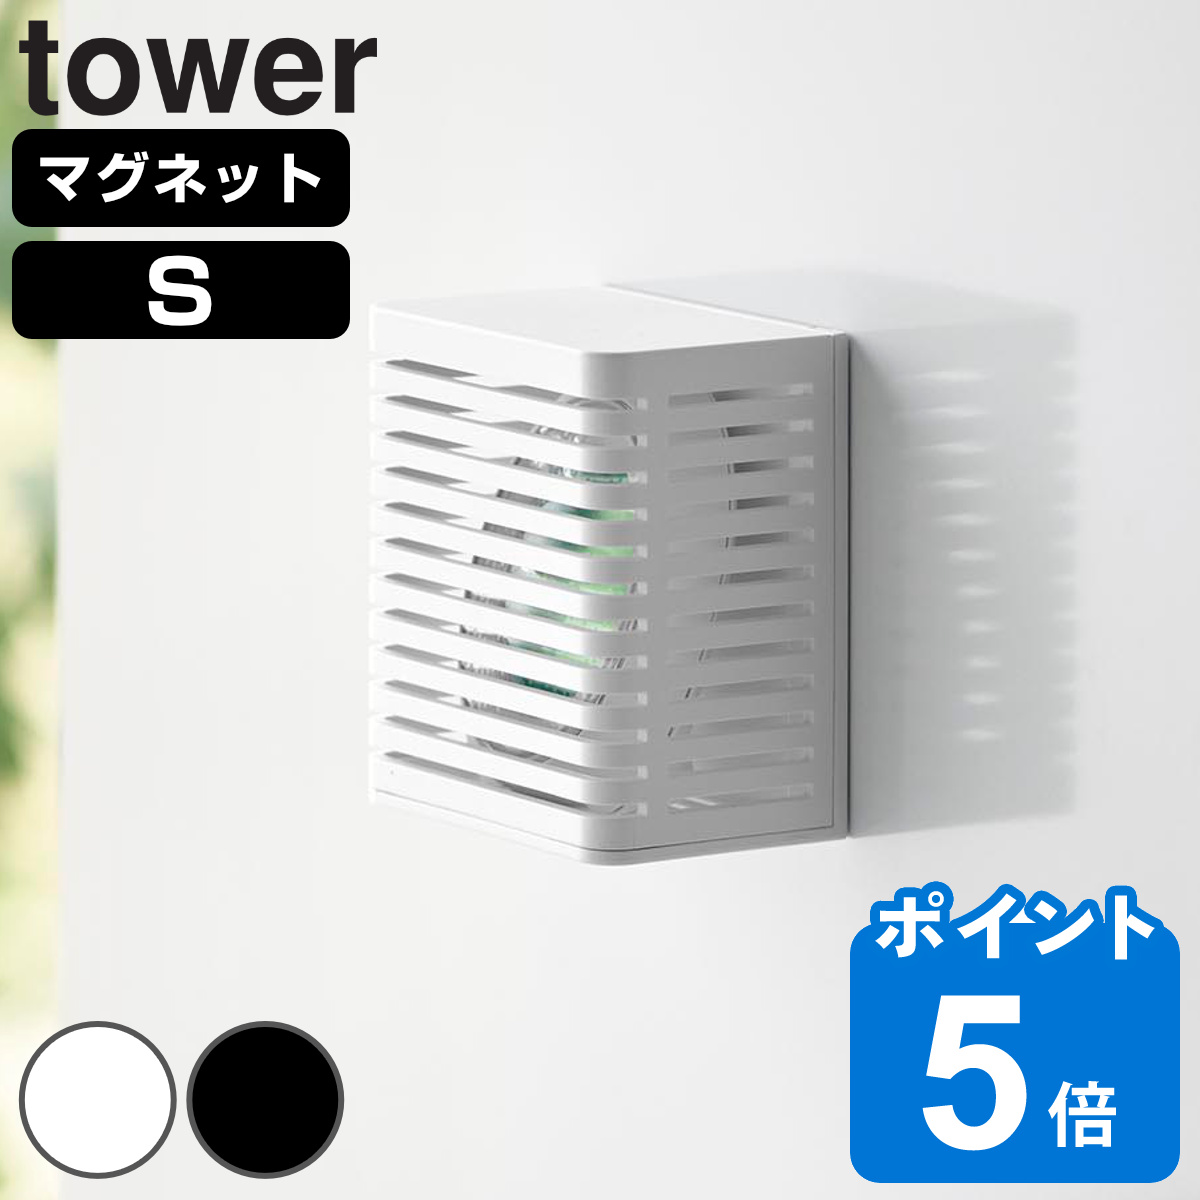 山崎実業 tower マグネット防カビ＆消臭剤ケース タワー S